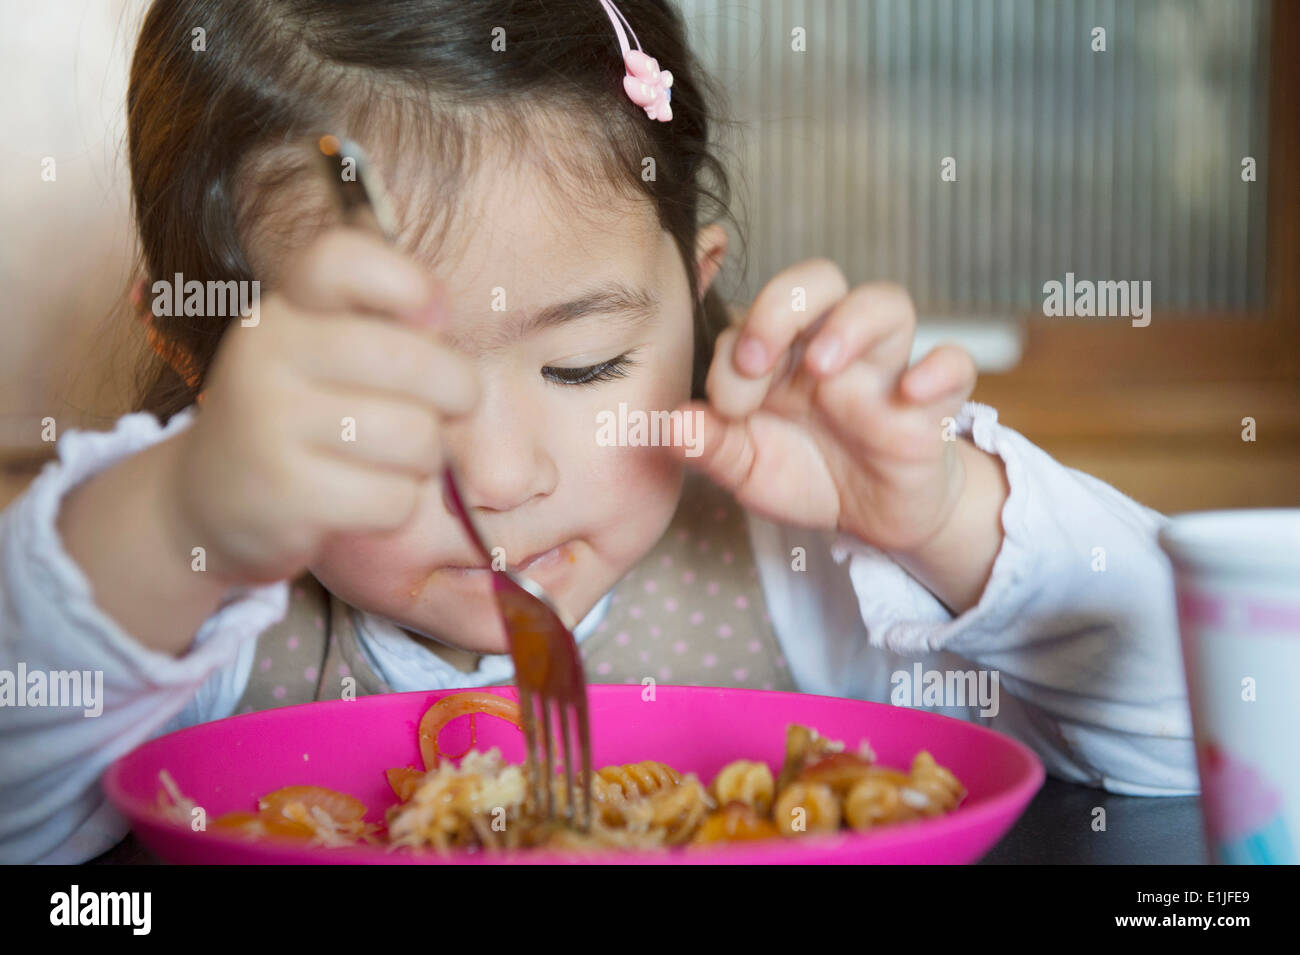 Girl using fork Stock Photo